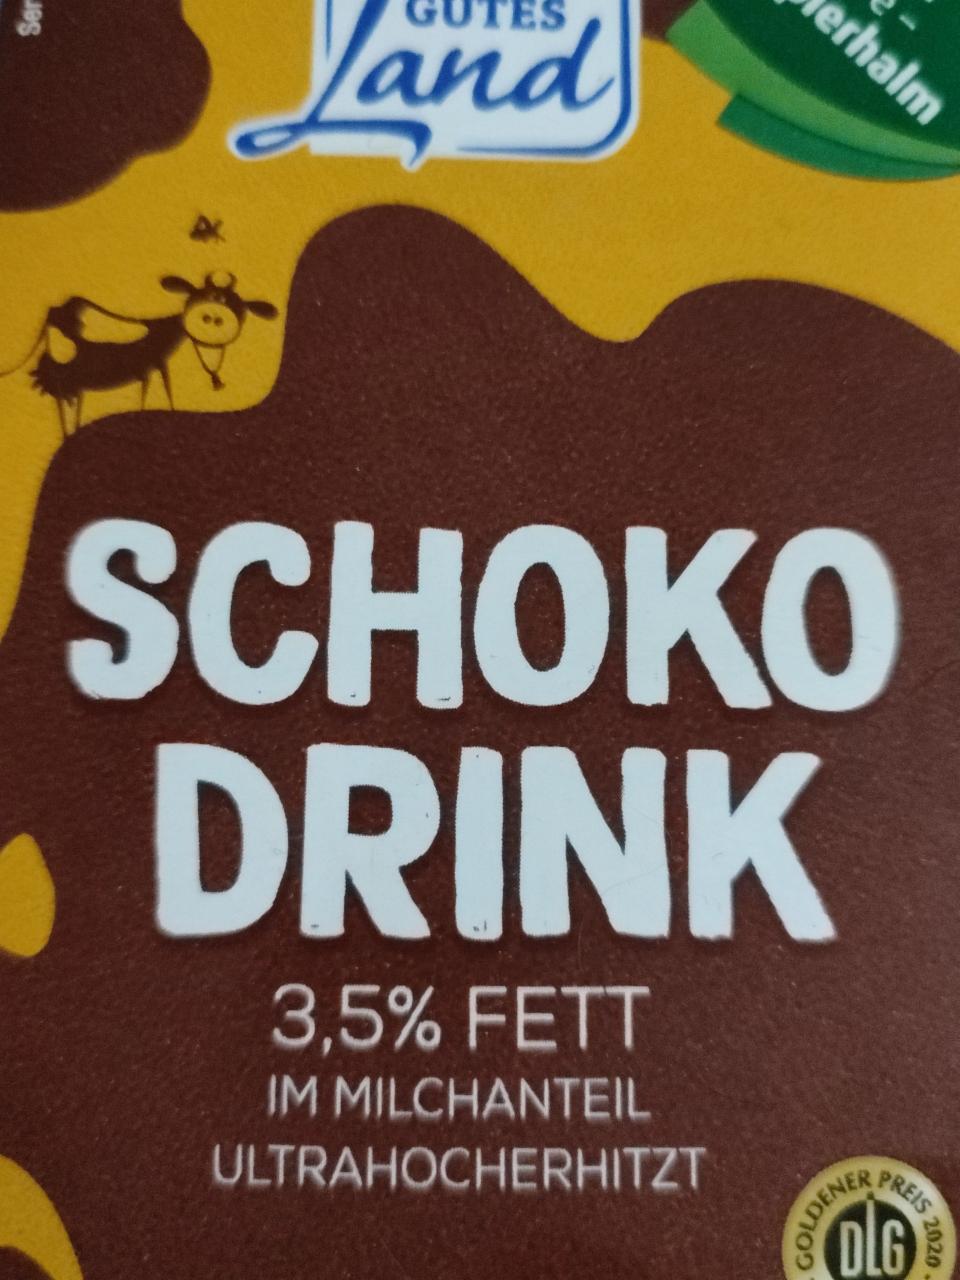 Fotografie - Schoko Drink 3,5% fett Gutes Land